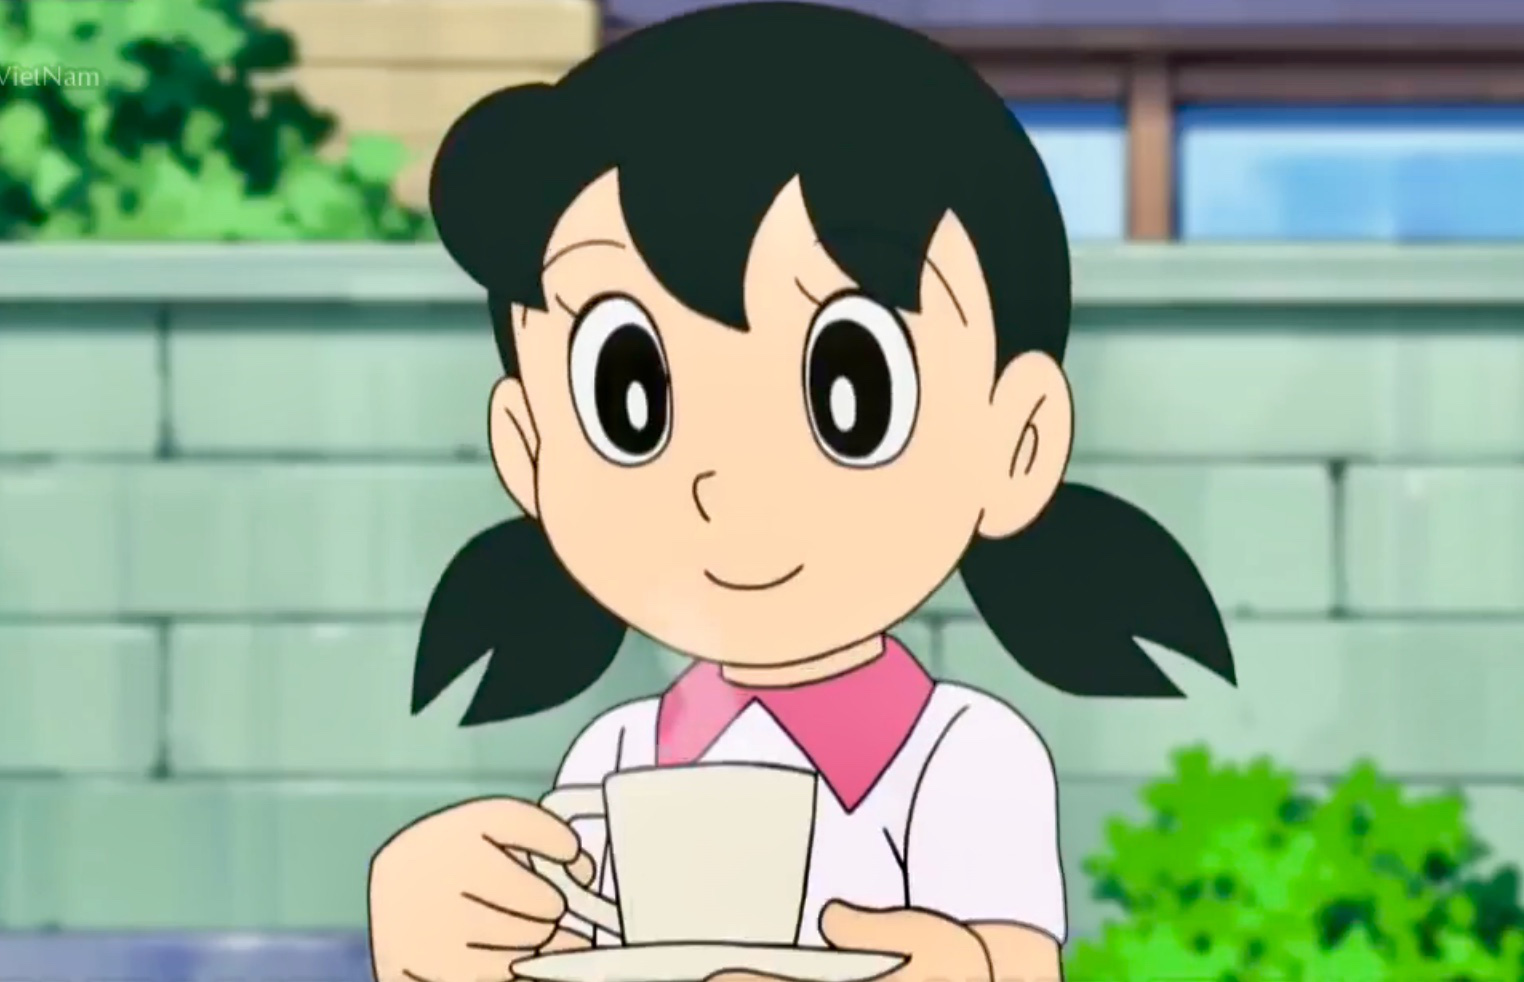 Shizuka giả tạo: Shizuka đang giả tạo? Bạn có thể tưởng tượng được điều này không? Hãy cùng đón xem hình ảnh Shizuka giả tạo để biết thêm chi tiết về cuộc phiêu lưu kỳ thú của các nhân vật trong truyện Doraemon.